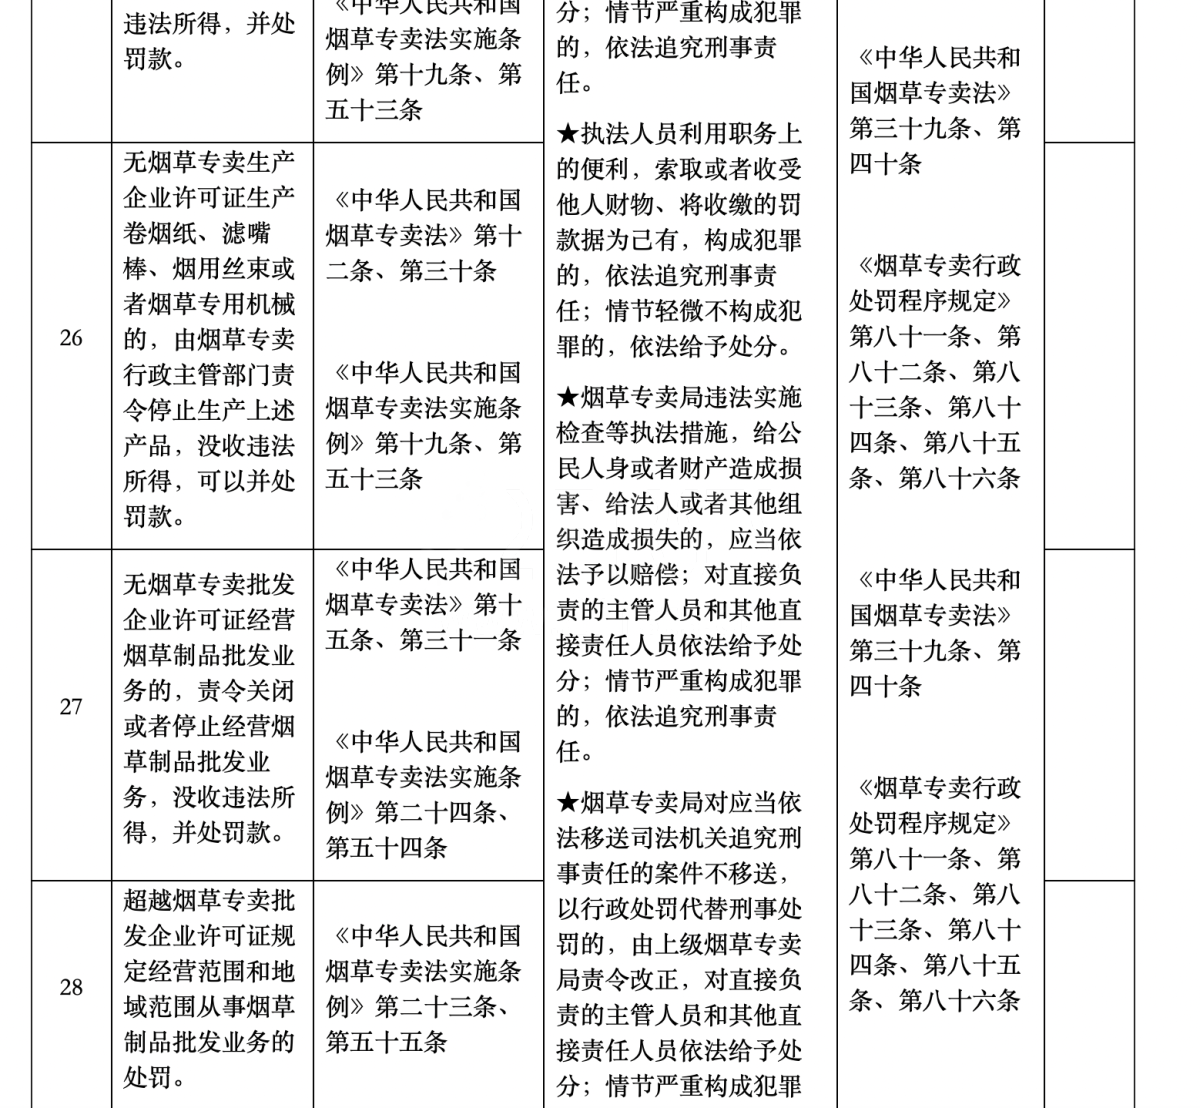 深圳市烟草专卖局公布权责清单